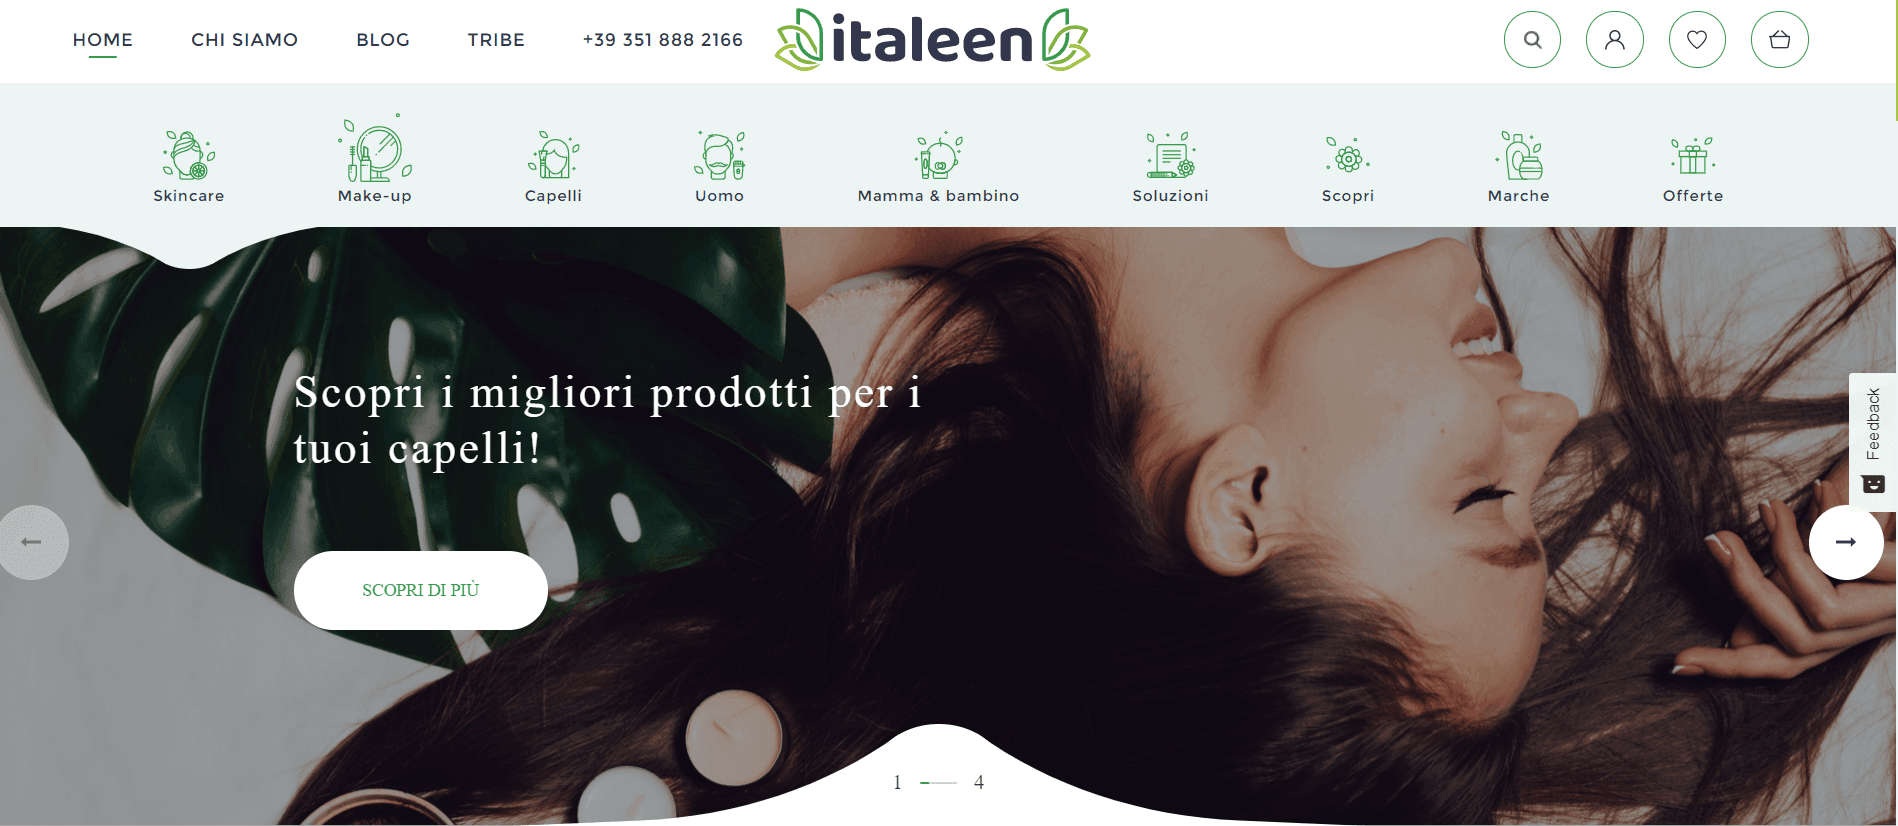 Італін (Italeen) купити онлайн з доставкою в Україну - Meest Shopping - 2